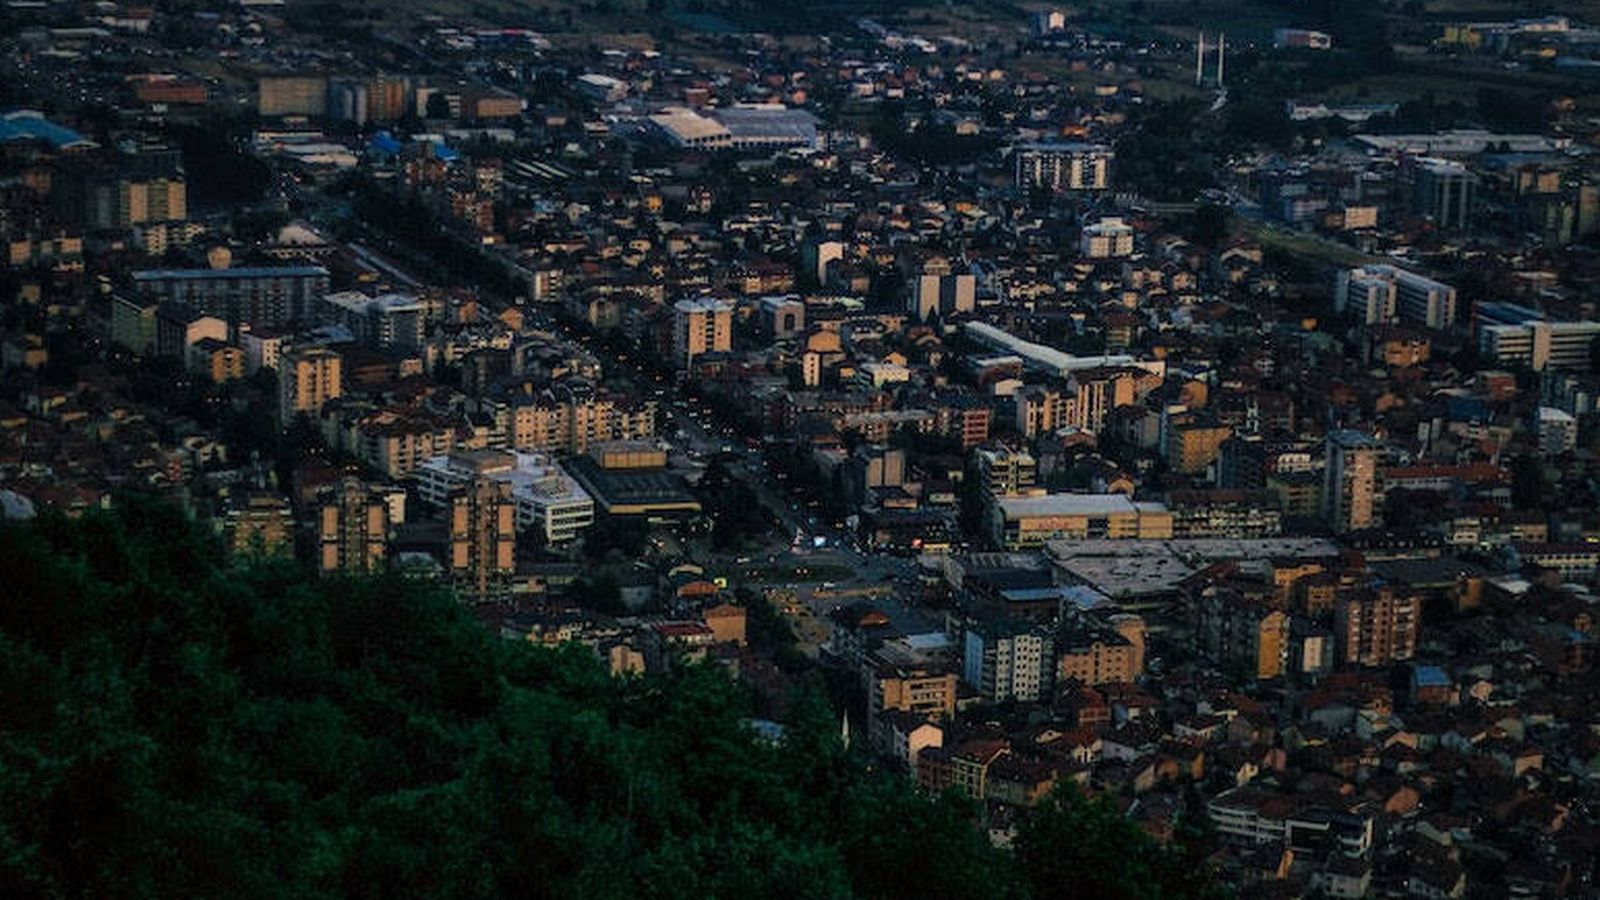 Tetovo, en Macedonia del Norte, estuvo sitiada durante el conflicto de 2001. Mientras las fuerzas de seguridad estaban dentro de la ciudad, los insurgentes de etnia albanesa mantenían posiciones en las colinas cercanas. (Elion Jashari, Unsplash)